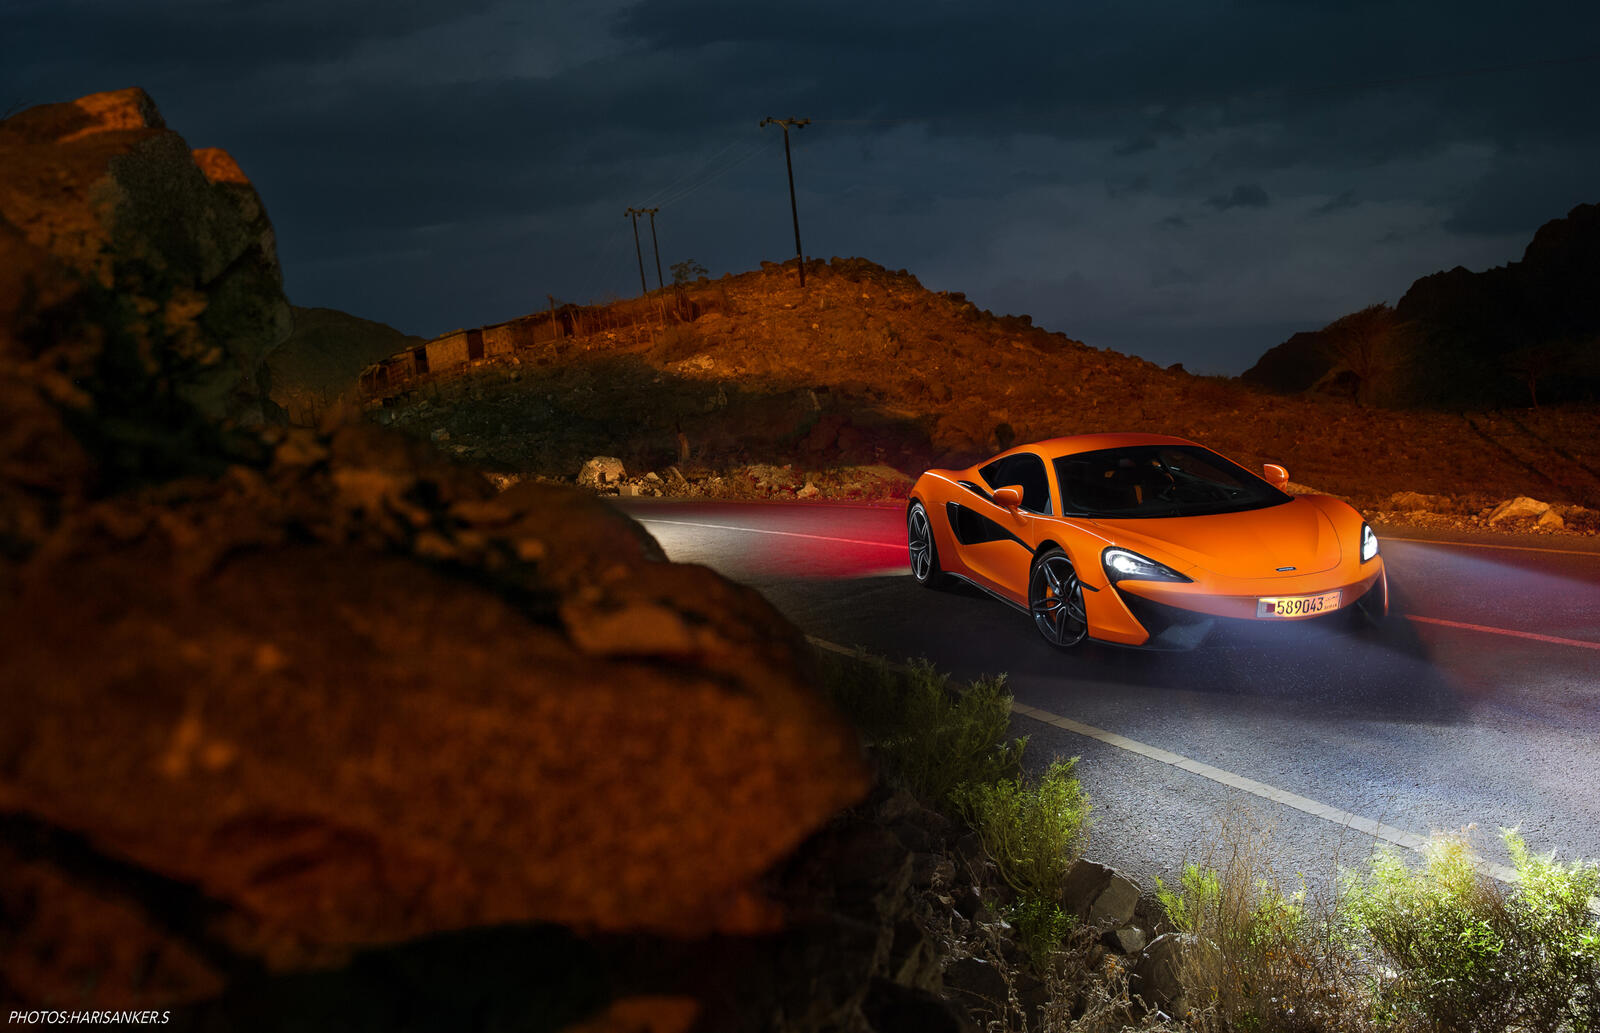 Бесплатное фото Mclaren оранжевого цвета на ночной дороге